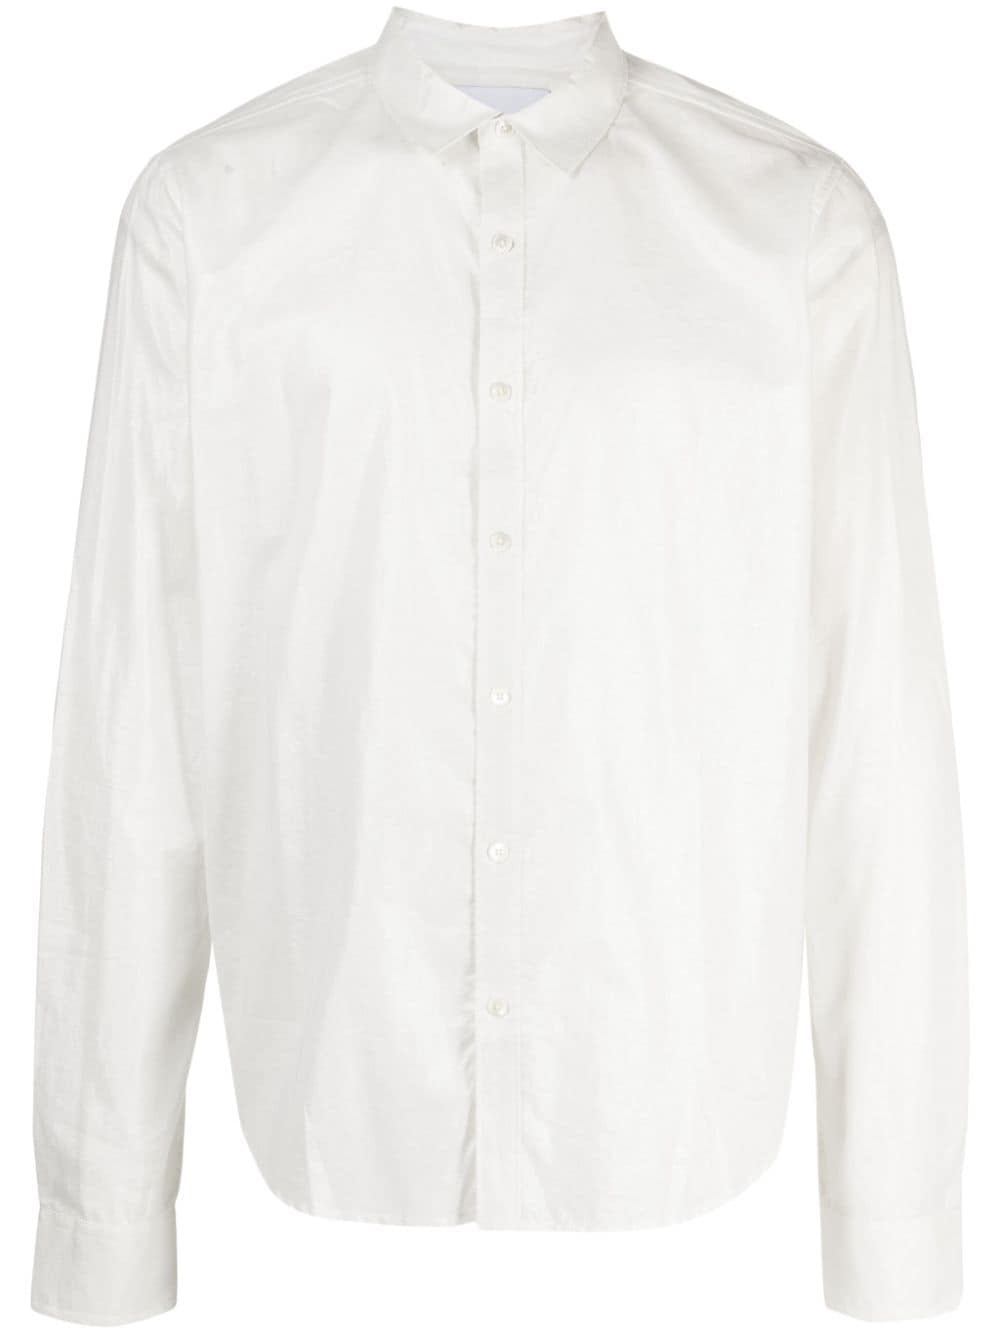 Private Stock Patton cotton shirt - White von Private Stock